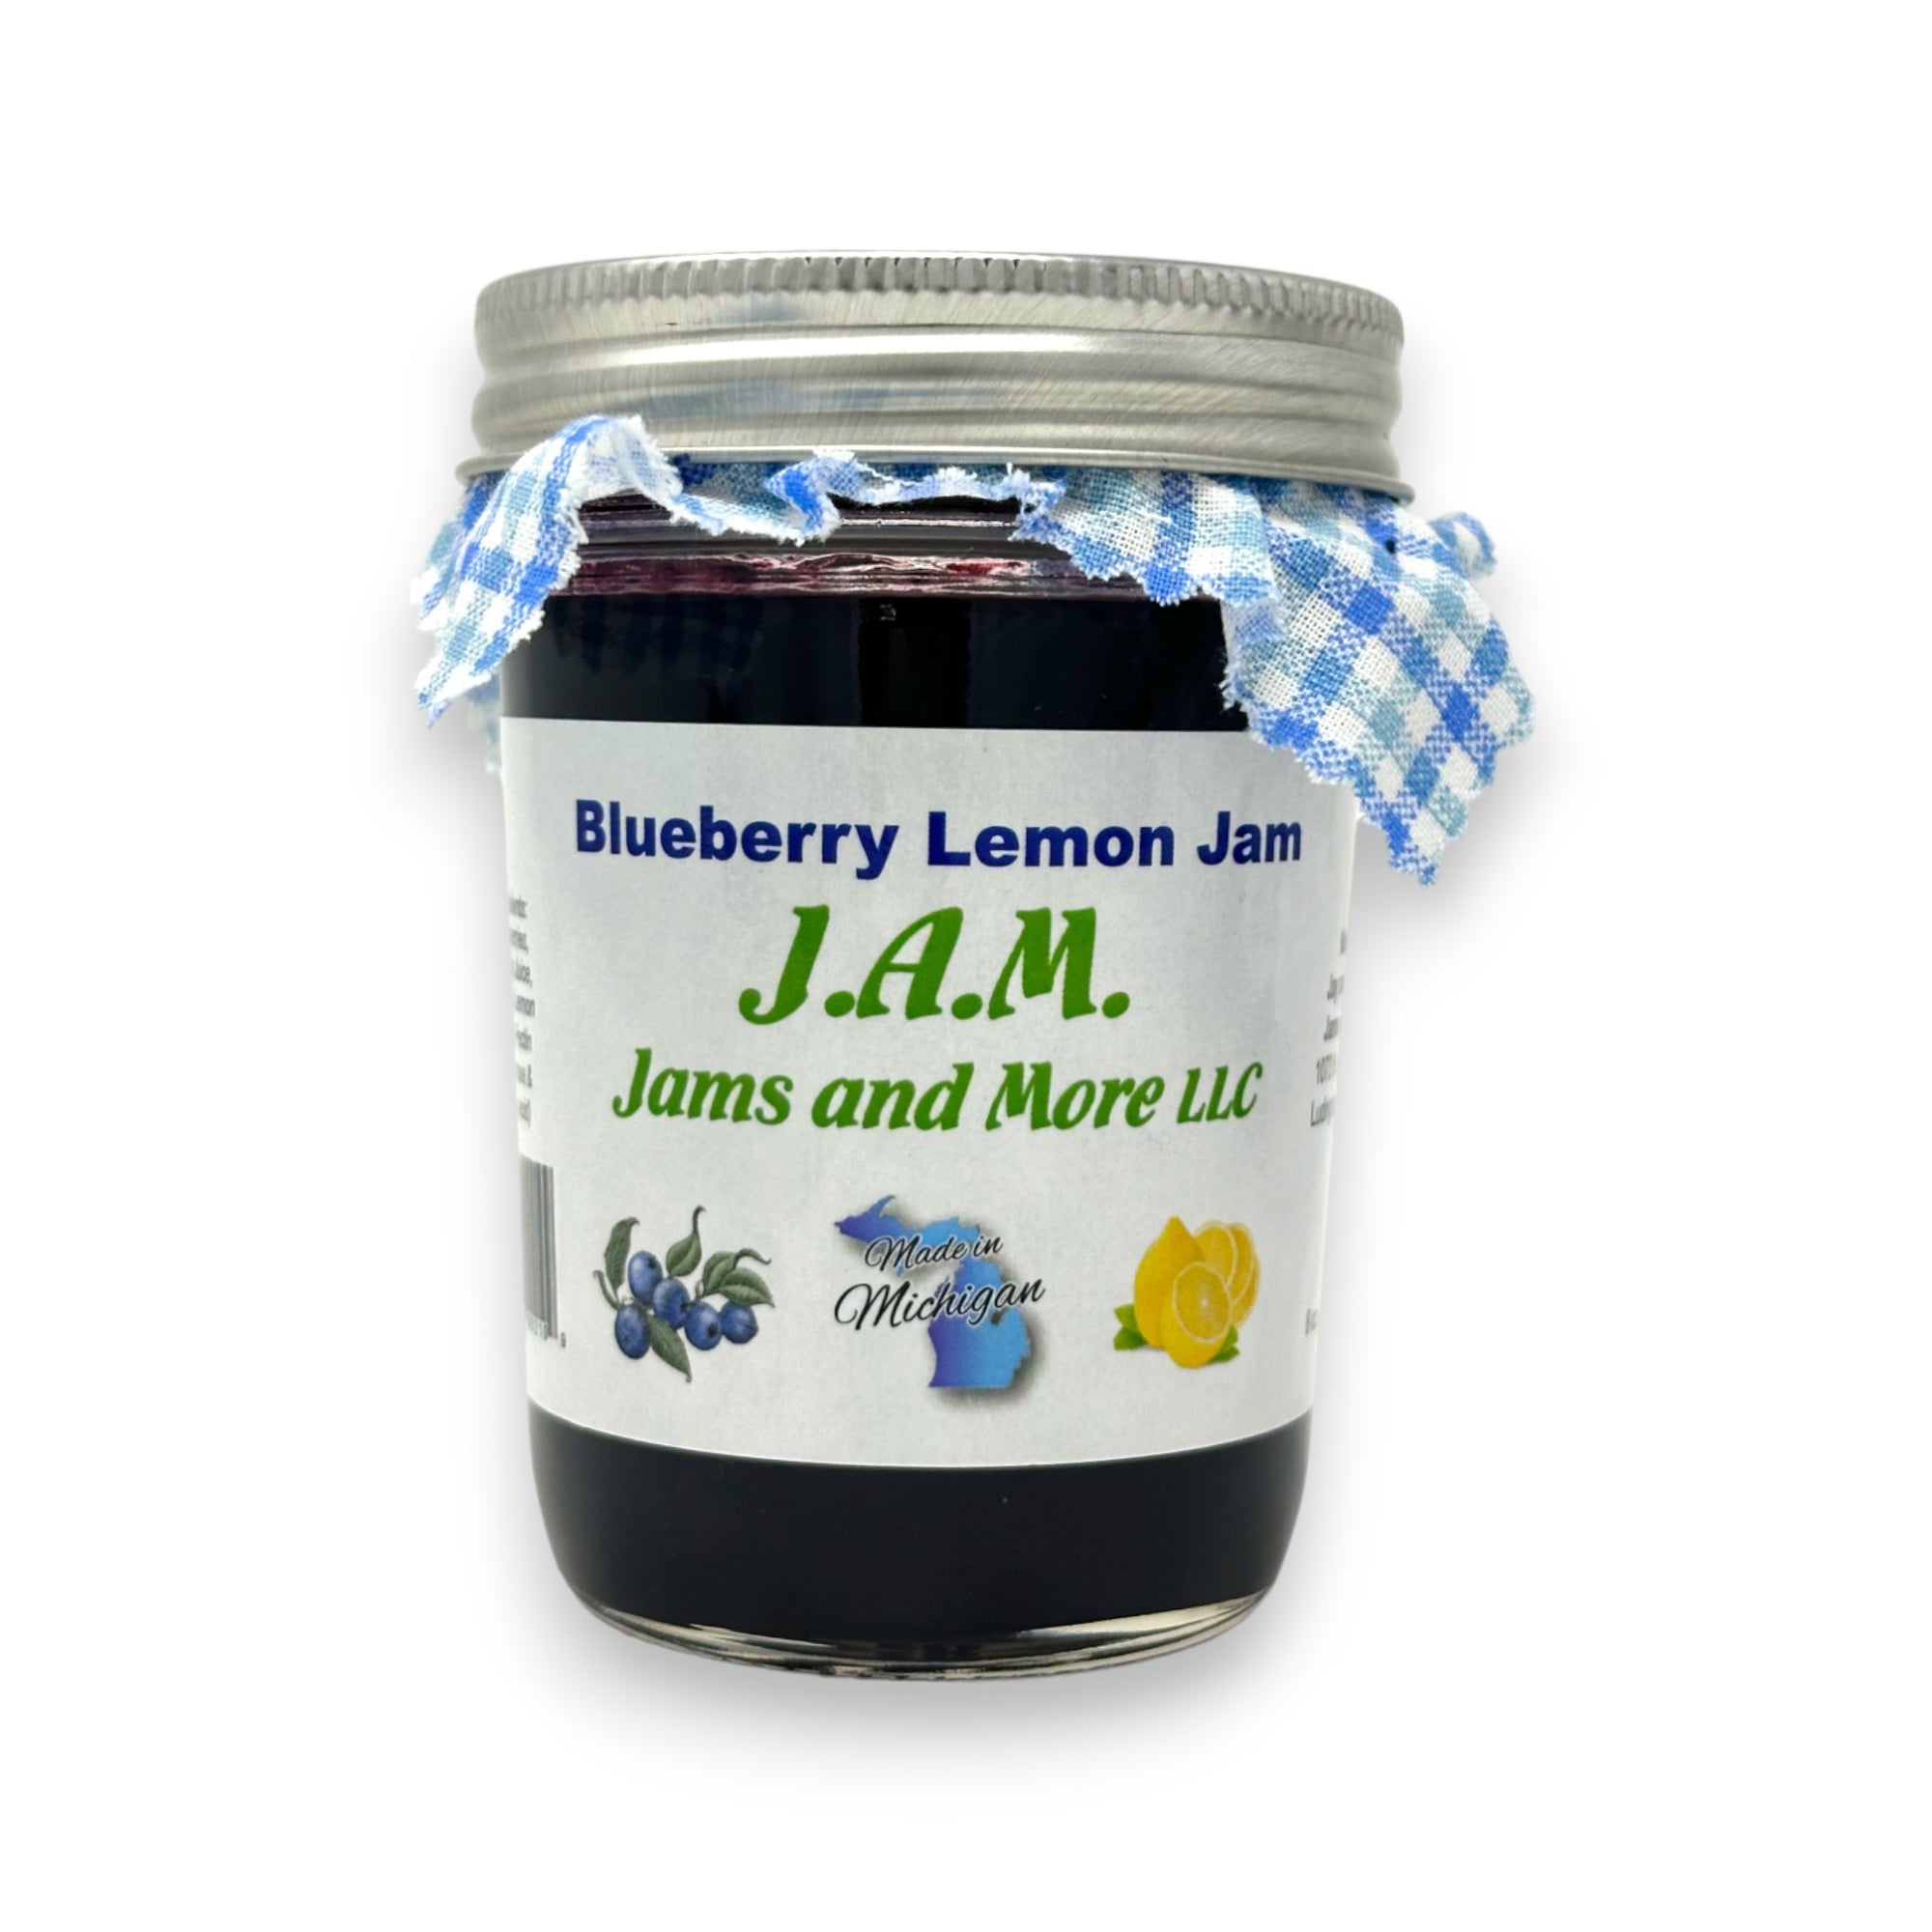 Blueberry Lemon Jam.